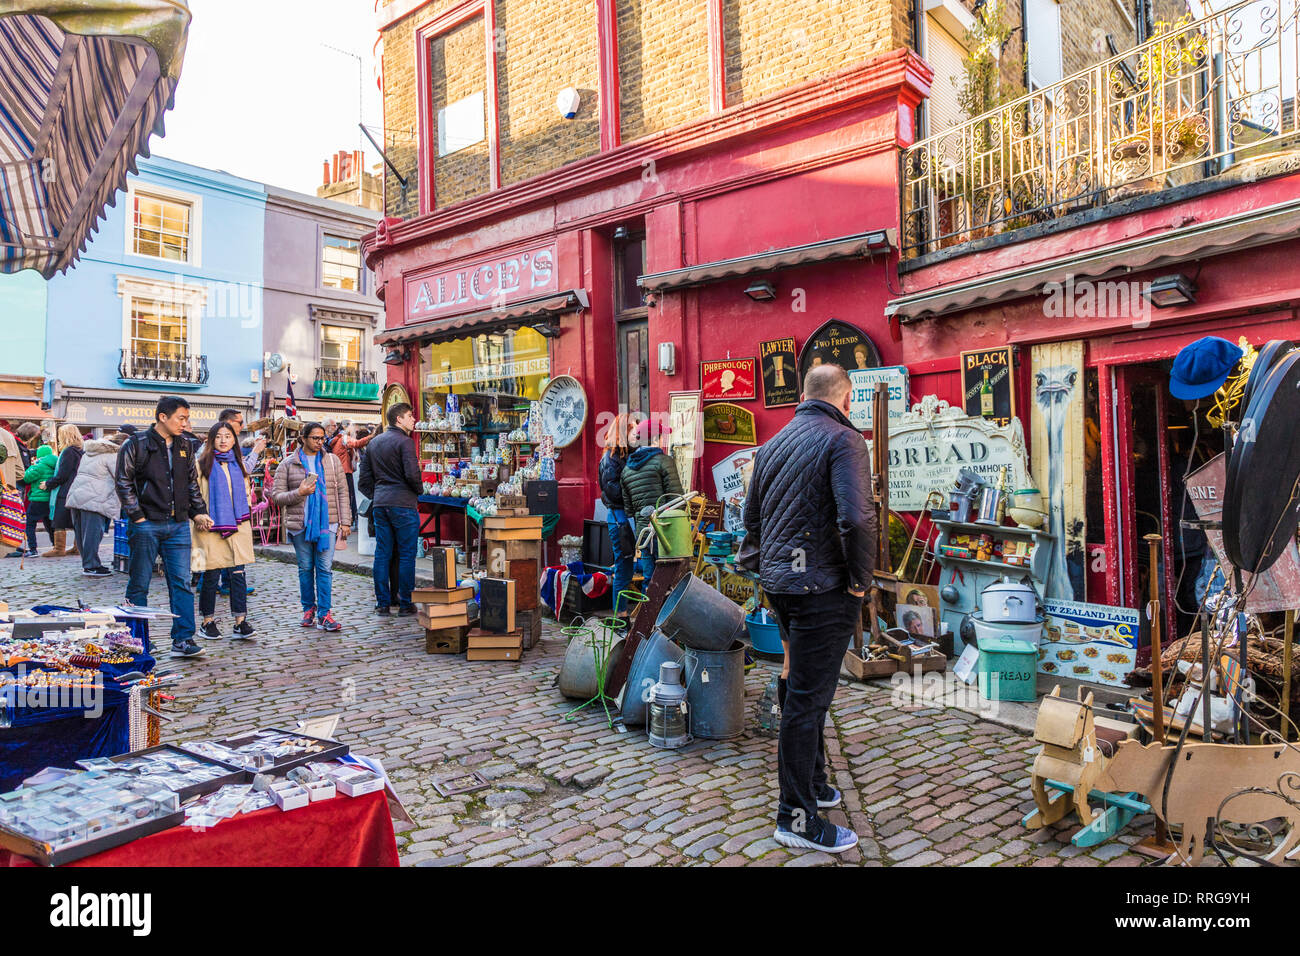 Une scène de marché, marché de Portobello Road à Notting Hill, Londres, Angleterre, Royaume-Uni, Europe Banque D'Images